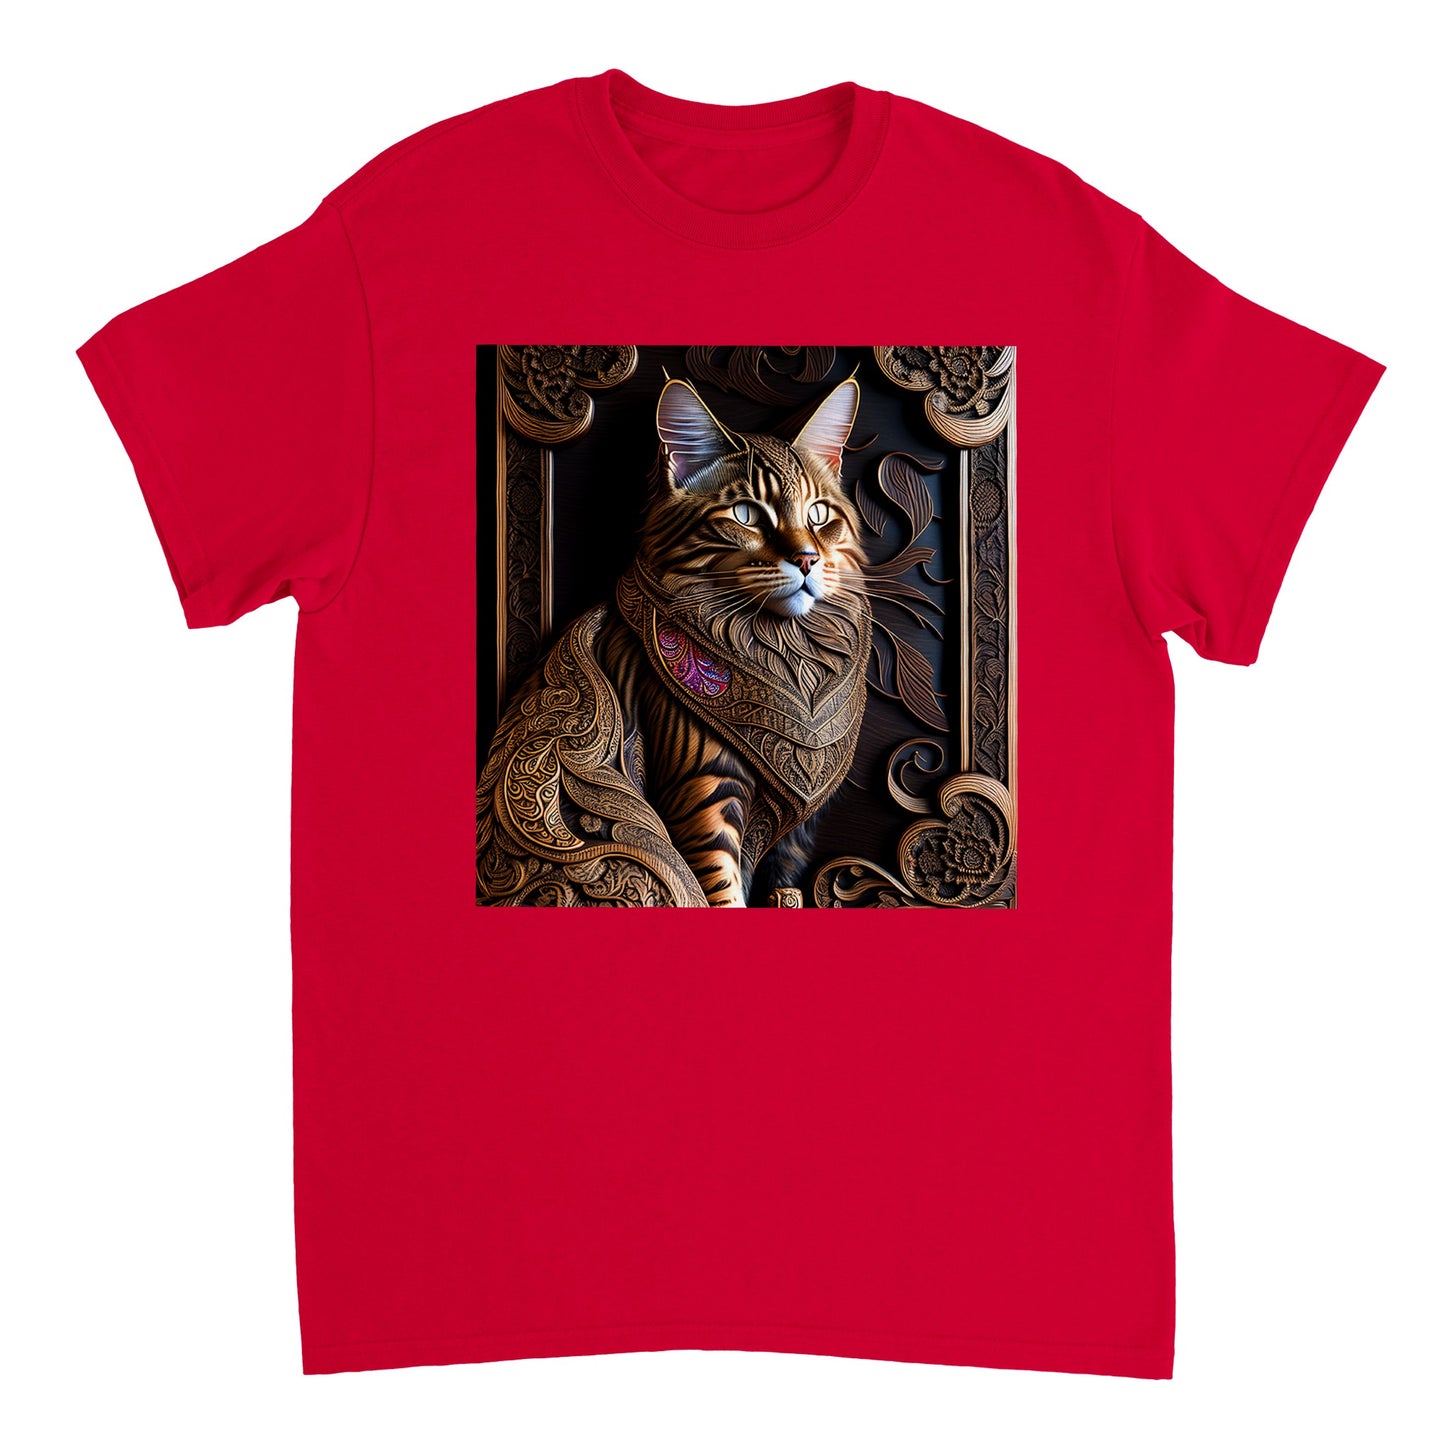 3D Wooden Animal Art - Heavyweight Unisex Crewneck T-shirt 59